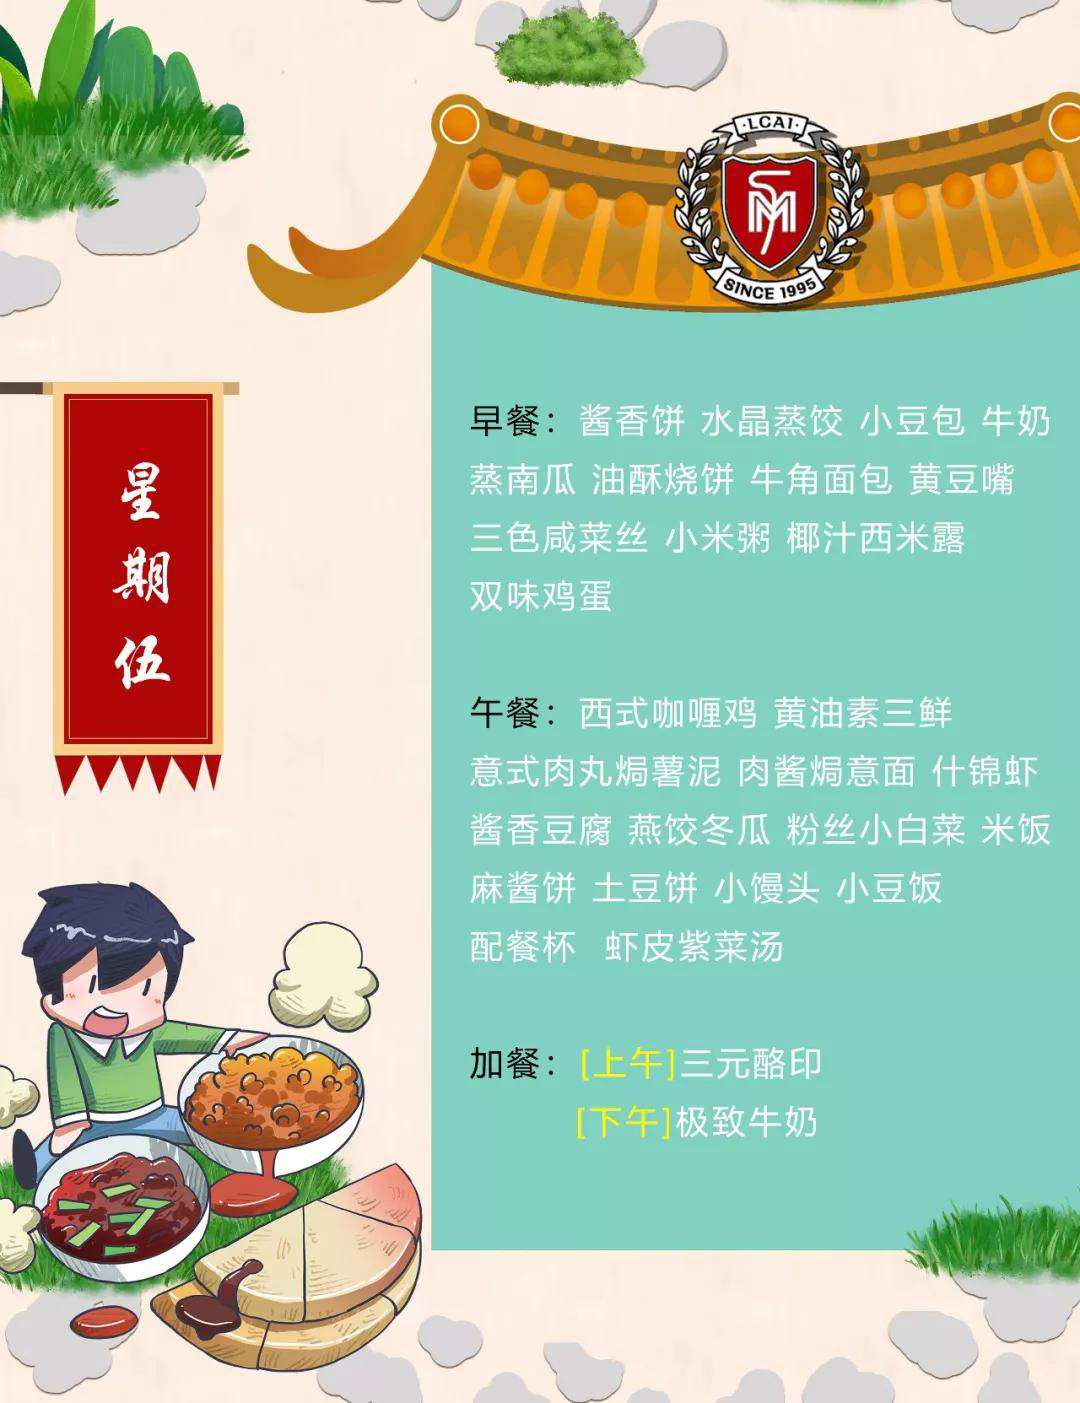 【力迈】Weekly Menu  第十四周美味菜谱 (图7)